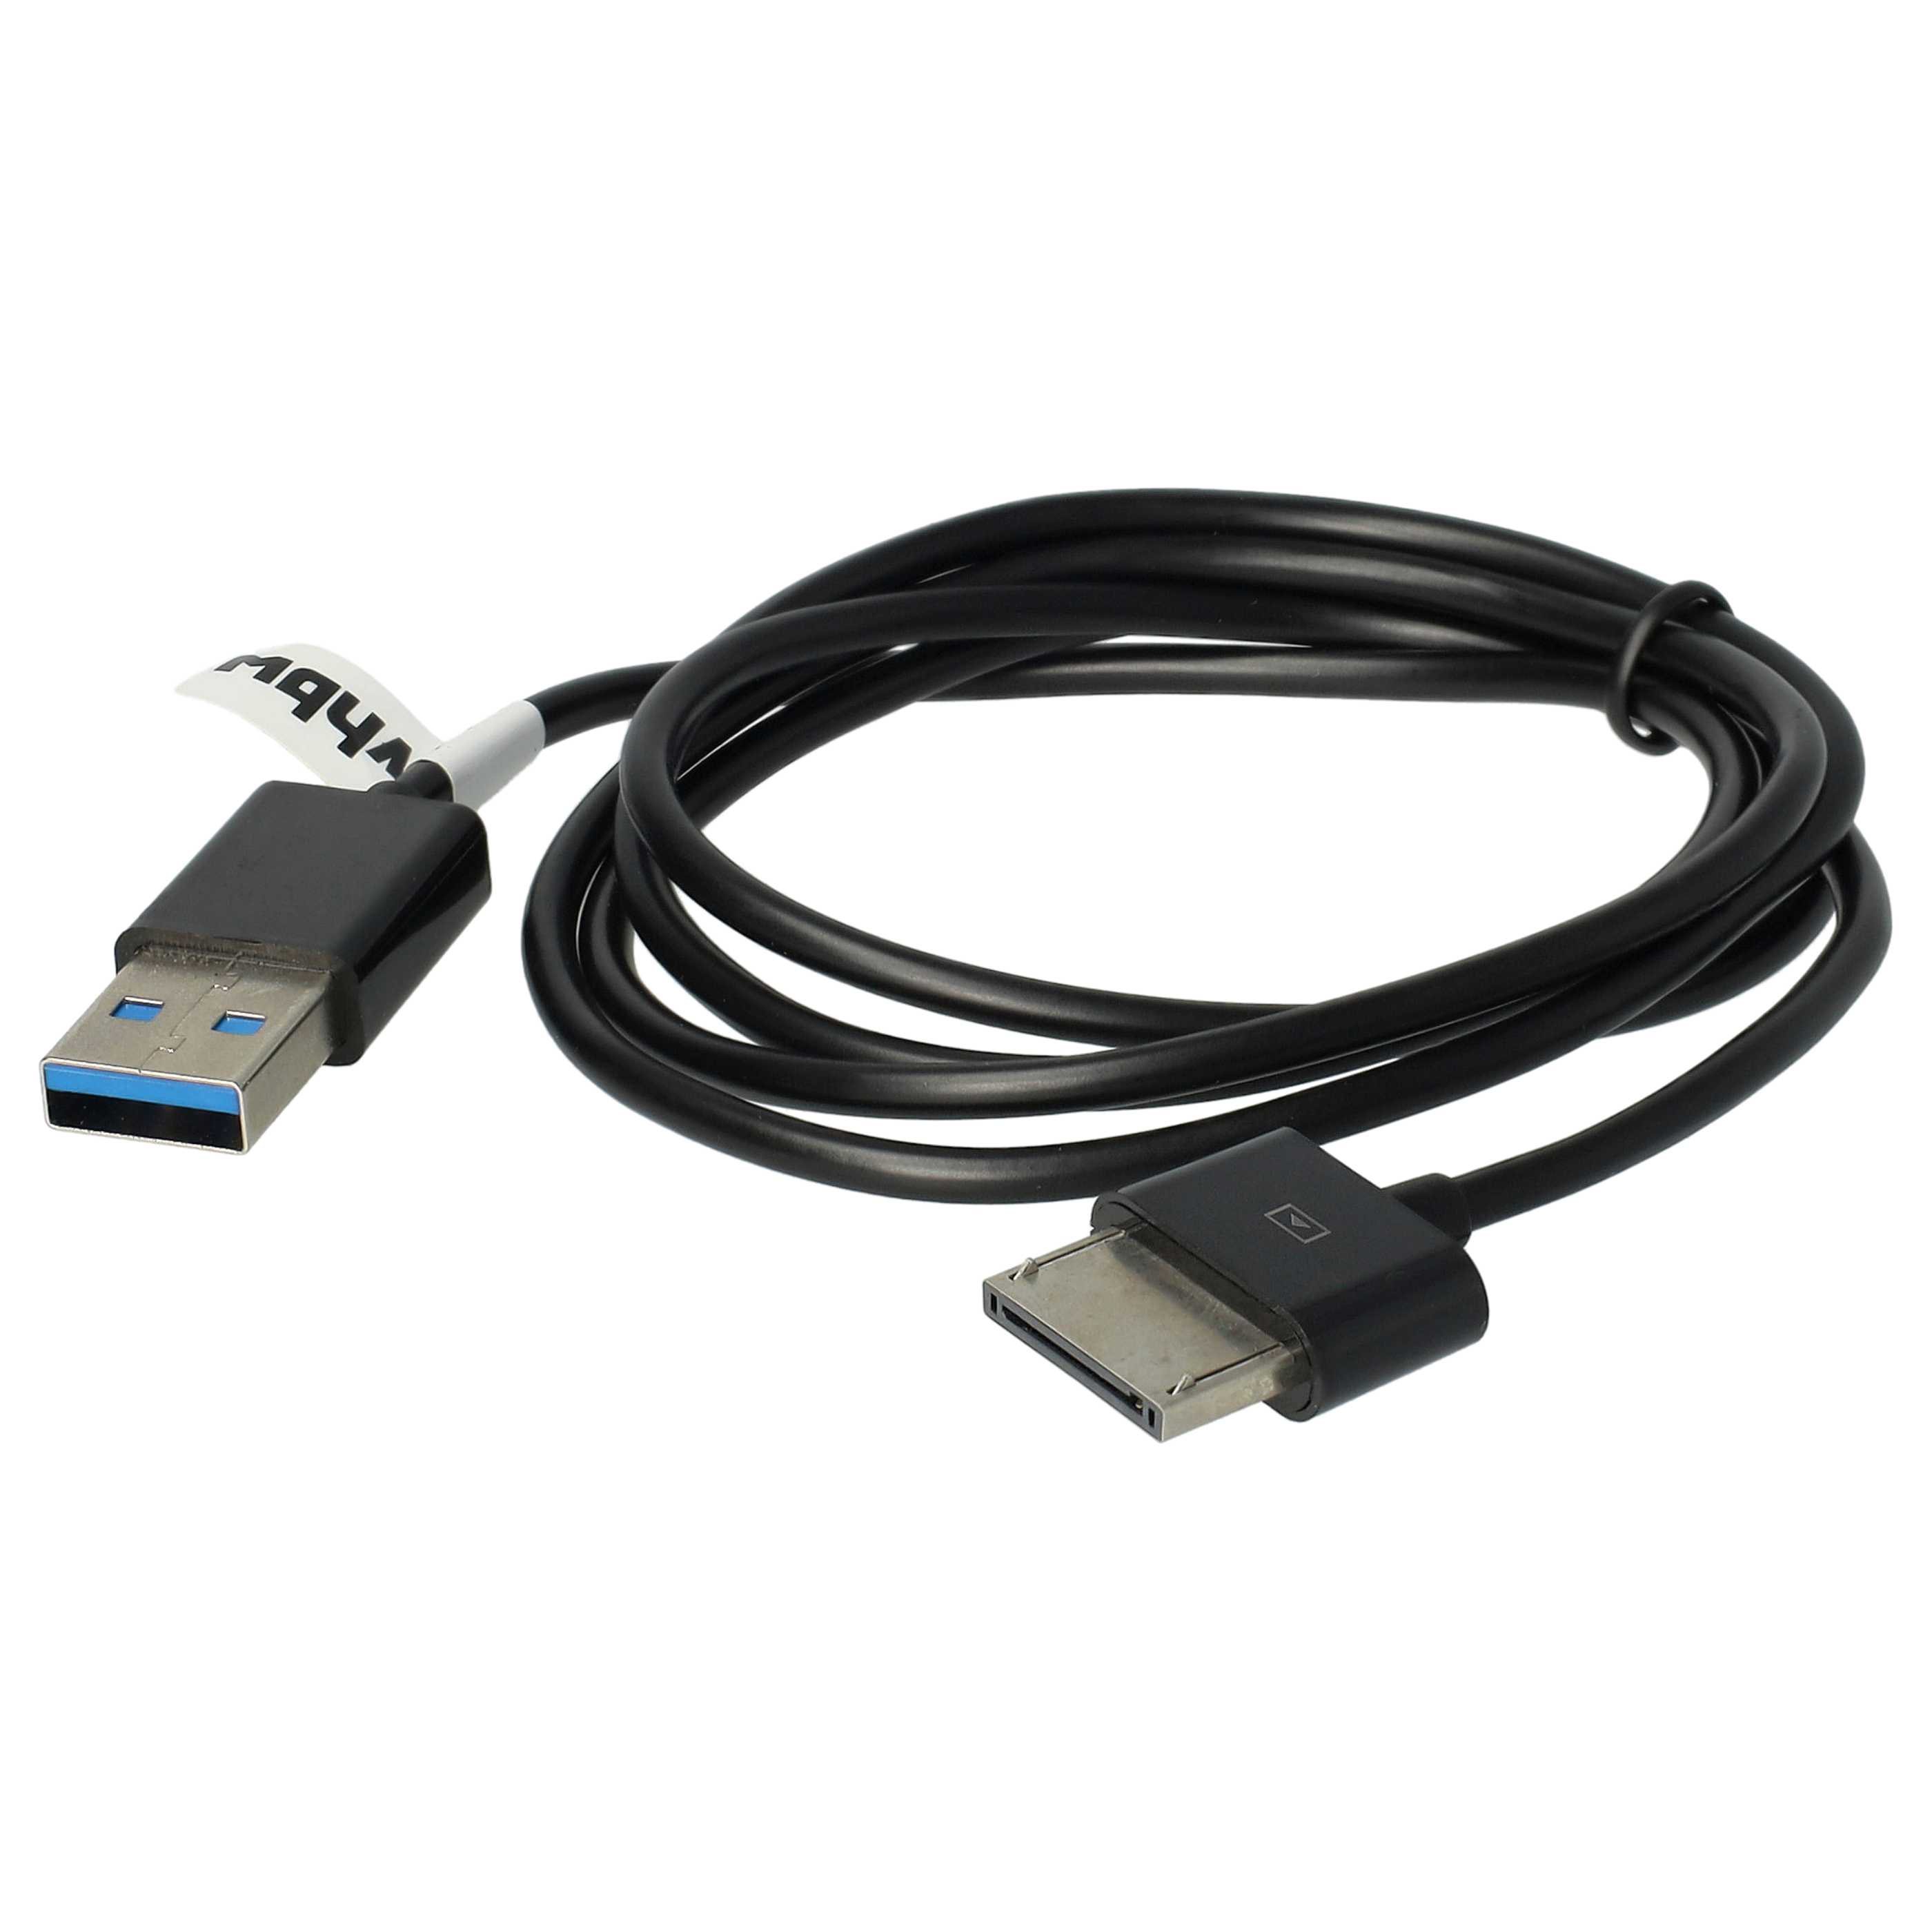 Cavo dati USB per tablet Asus Transformer Pad Infinity - cavo di alimentazione 2in1